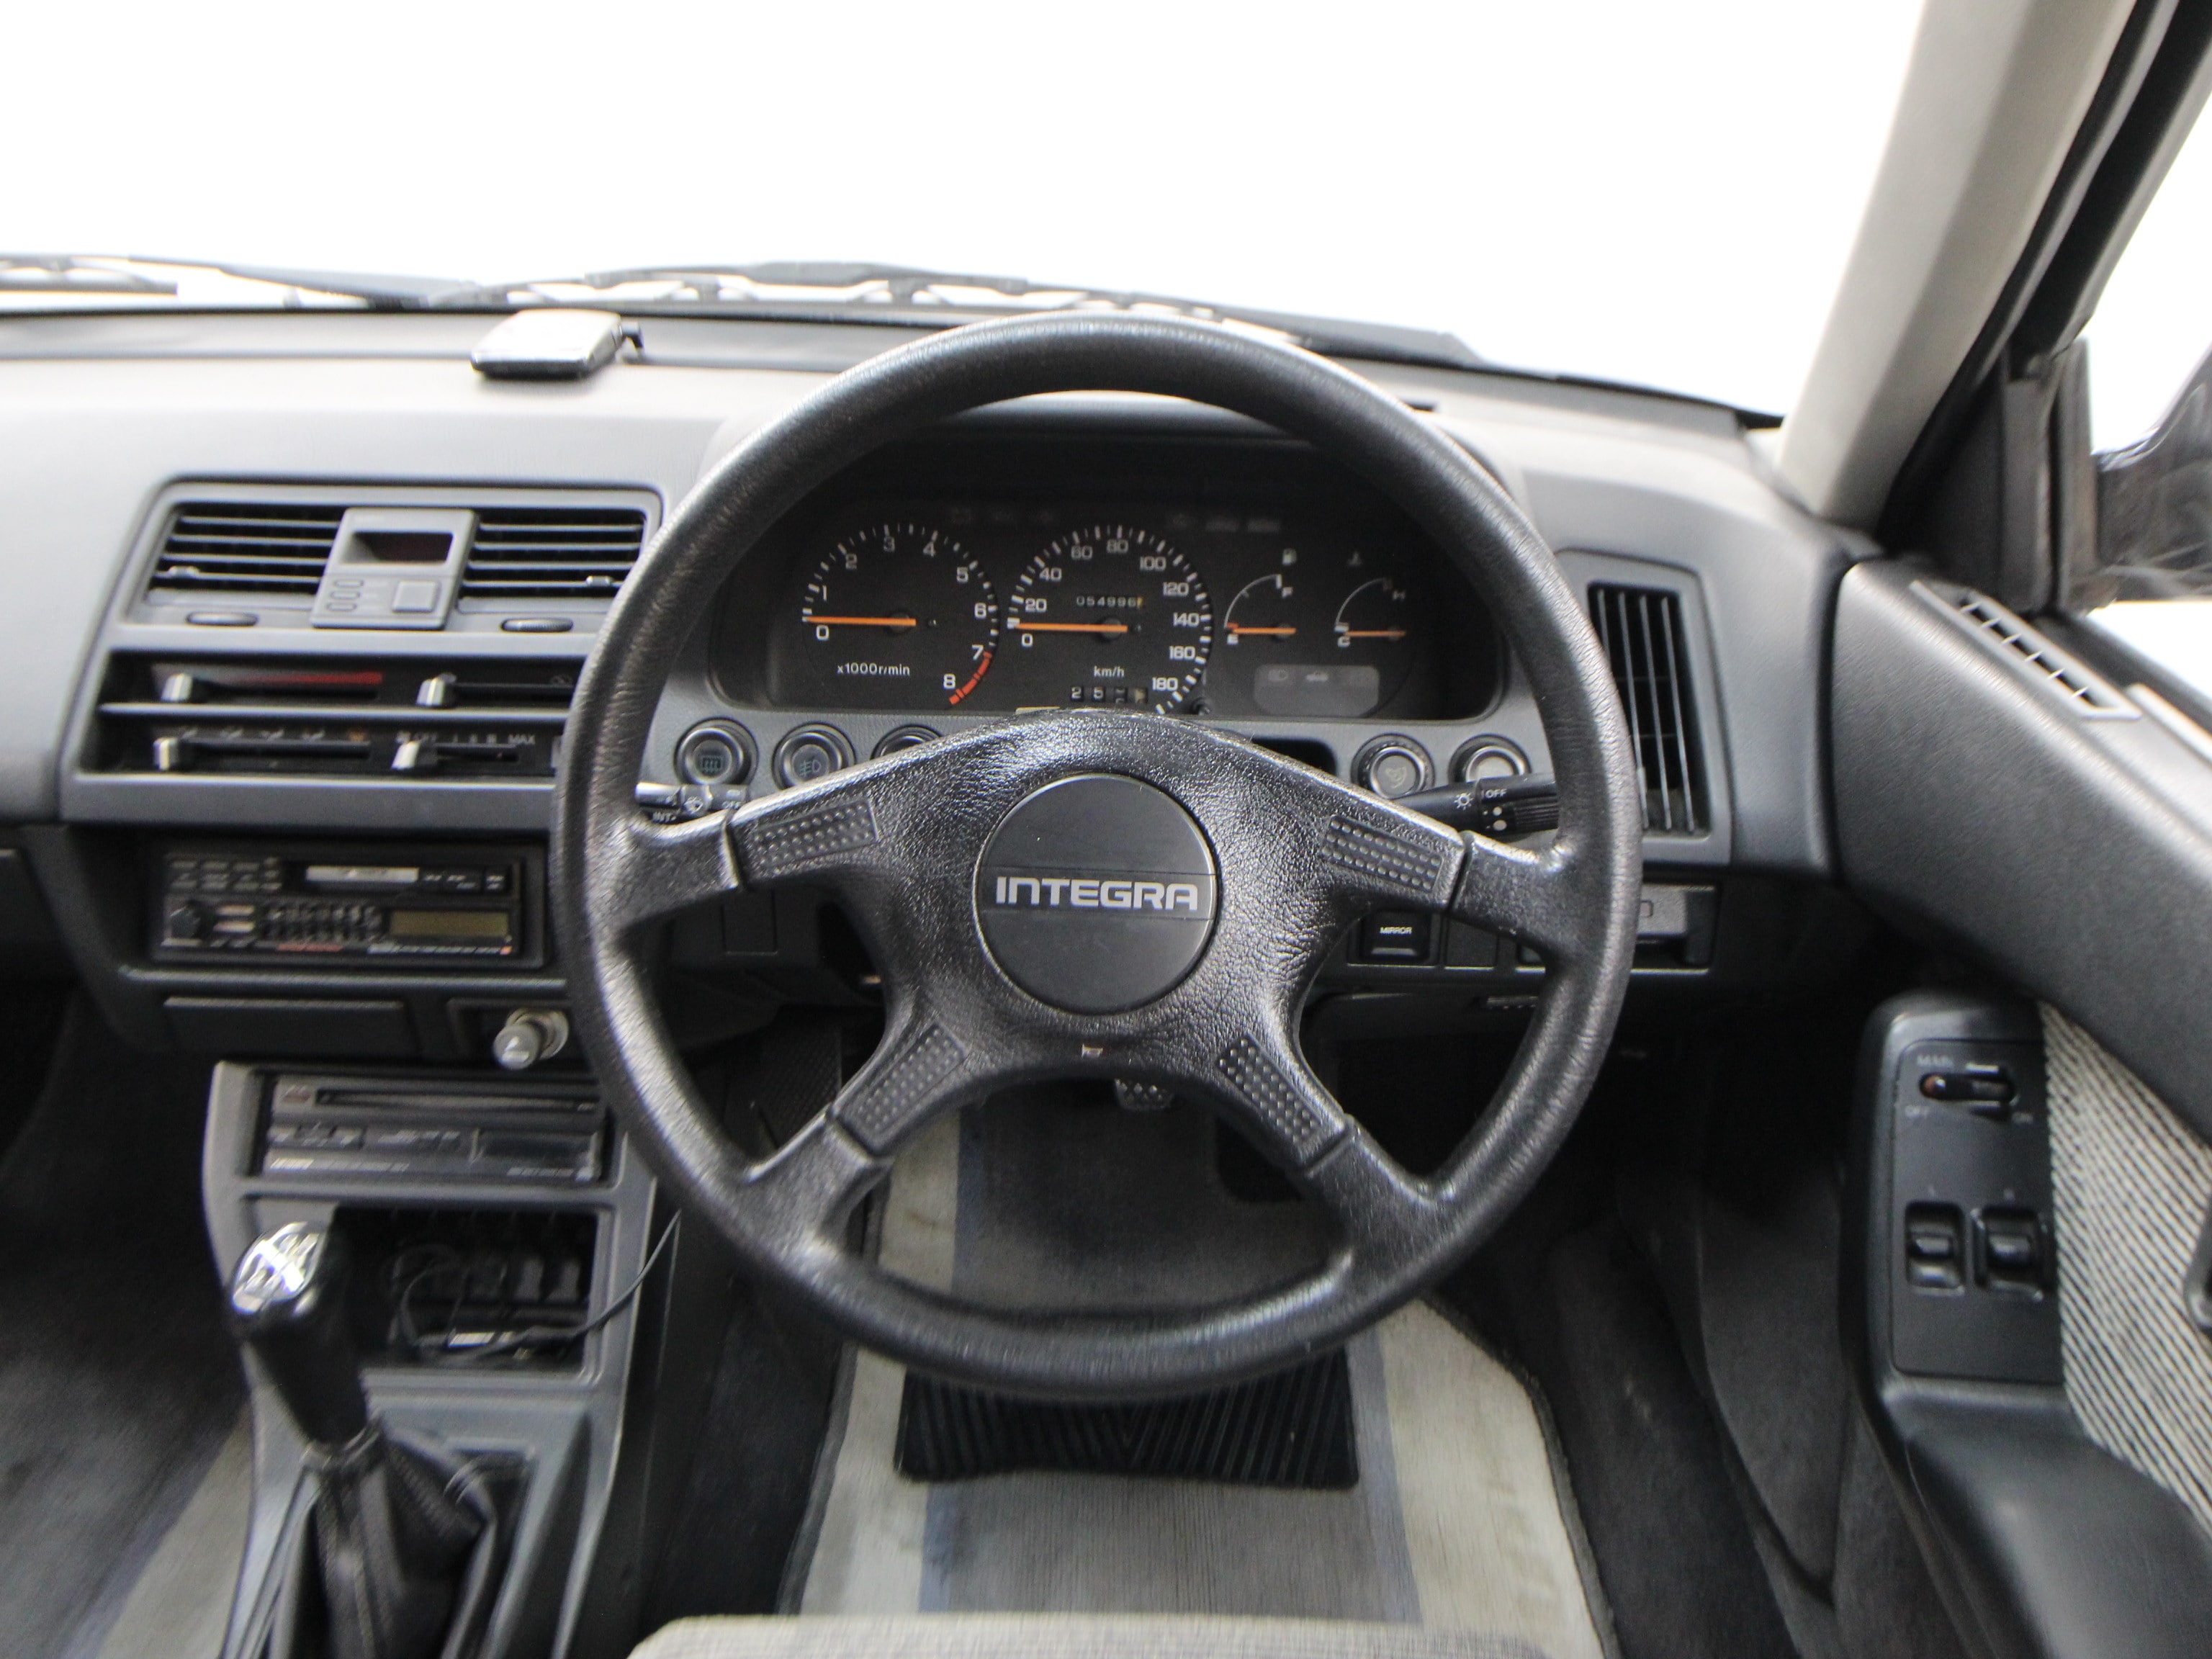 1988 Honda Quint Integra 10